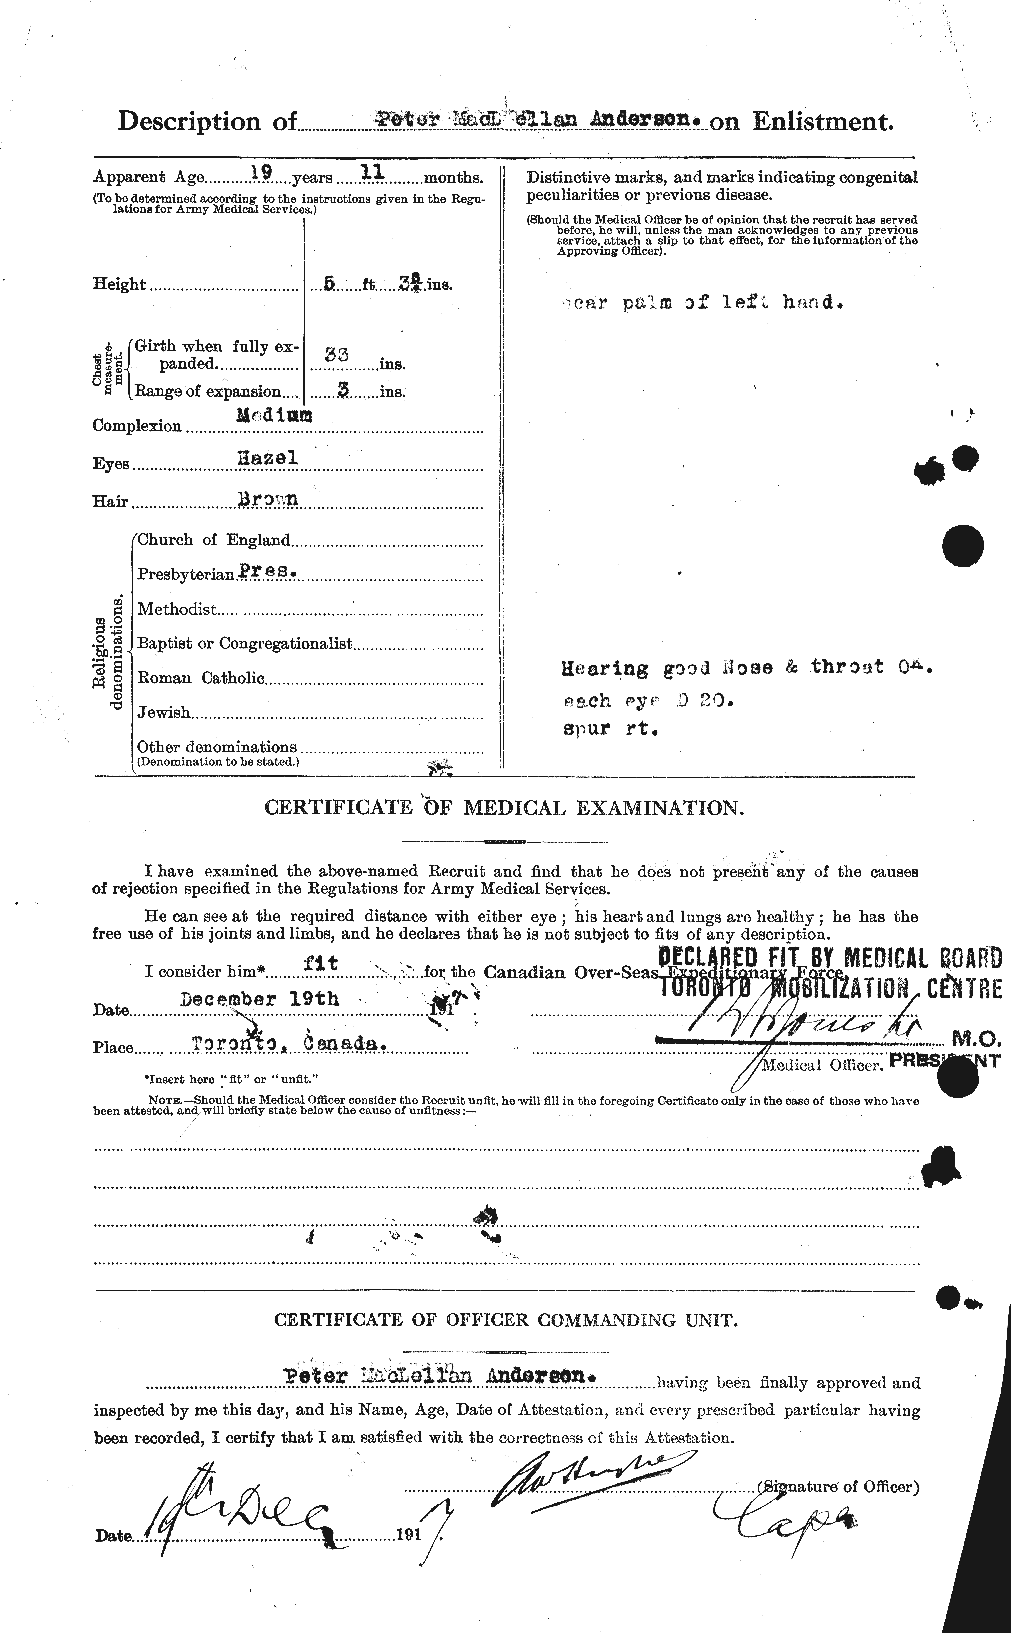 Dossiers du Personnel de la Première Guerre mondiale - CEC 207343b